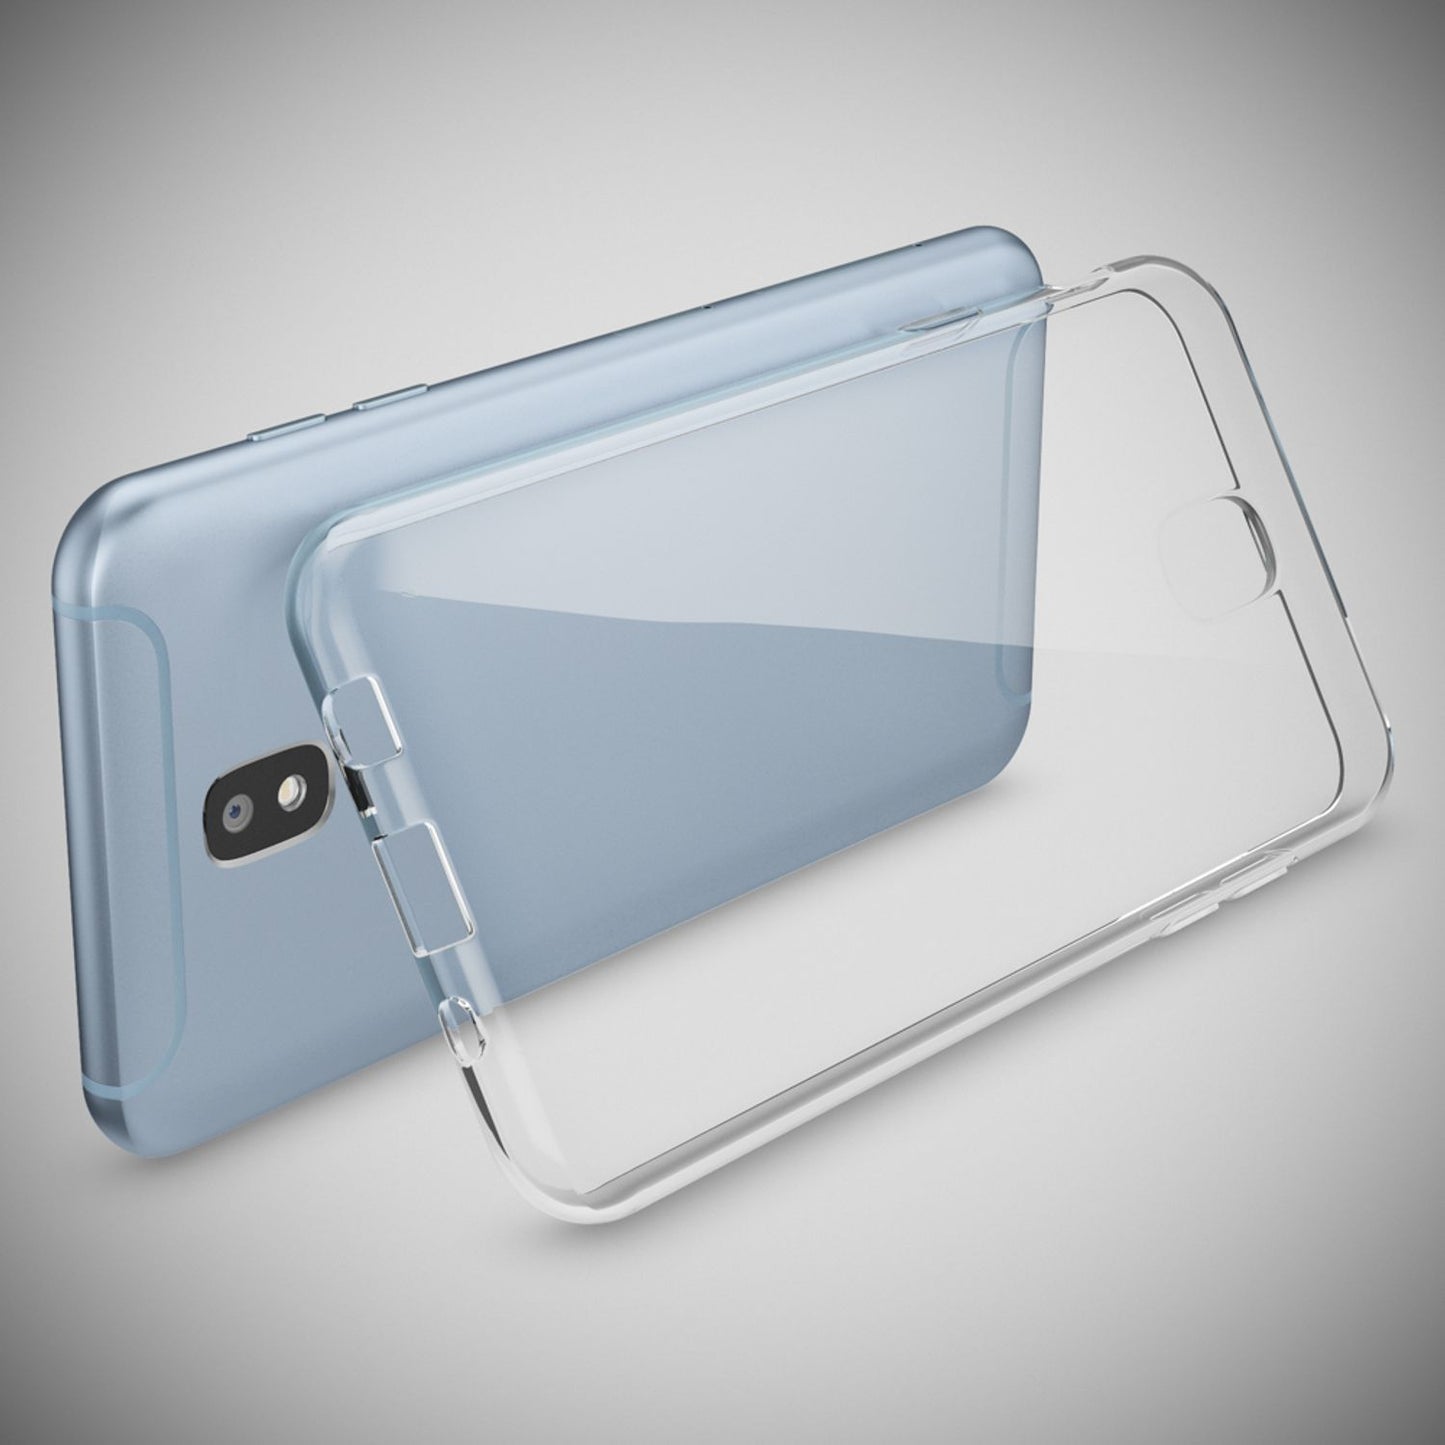 Samsung Galaxy J3 2017 (EU-Modell) Hülle von NALIA, Case Cover Tasche Handyhülle